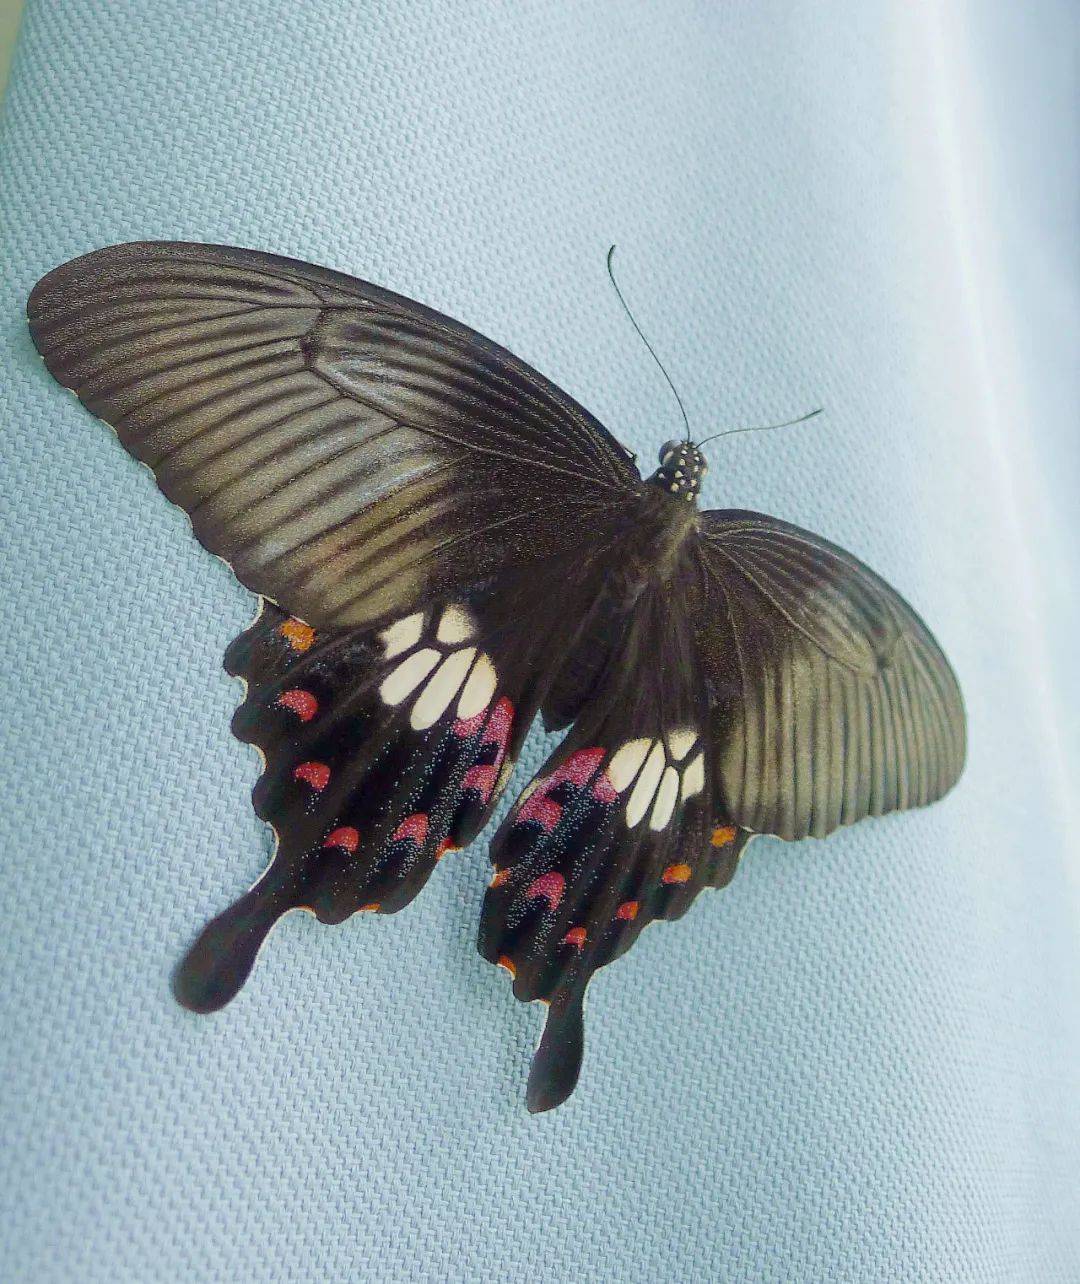 玉带凤蝶自然笔记图片